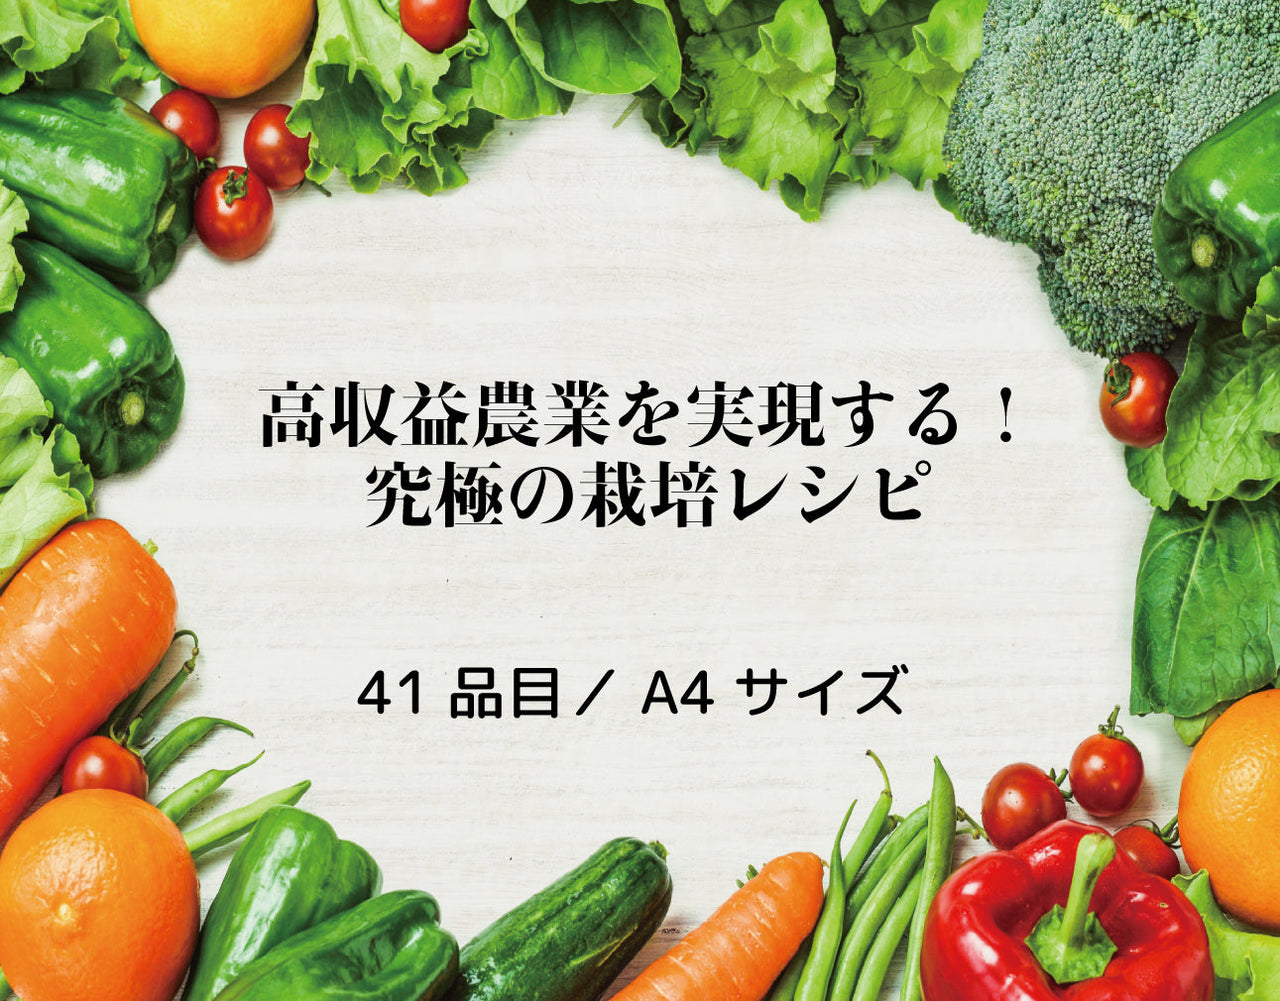 【有料資料】究極の栽培レシピ